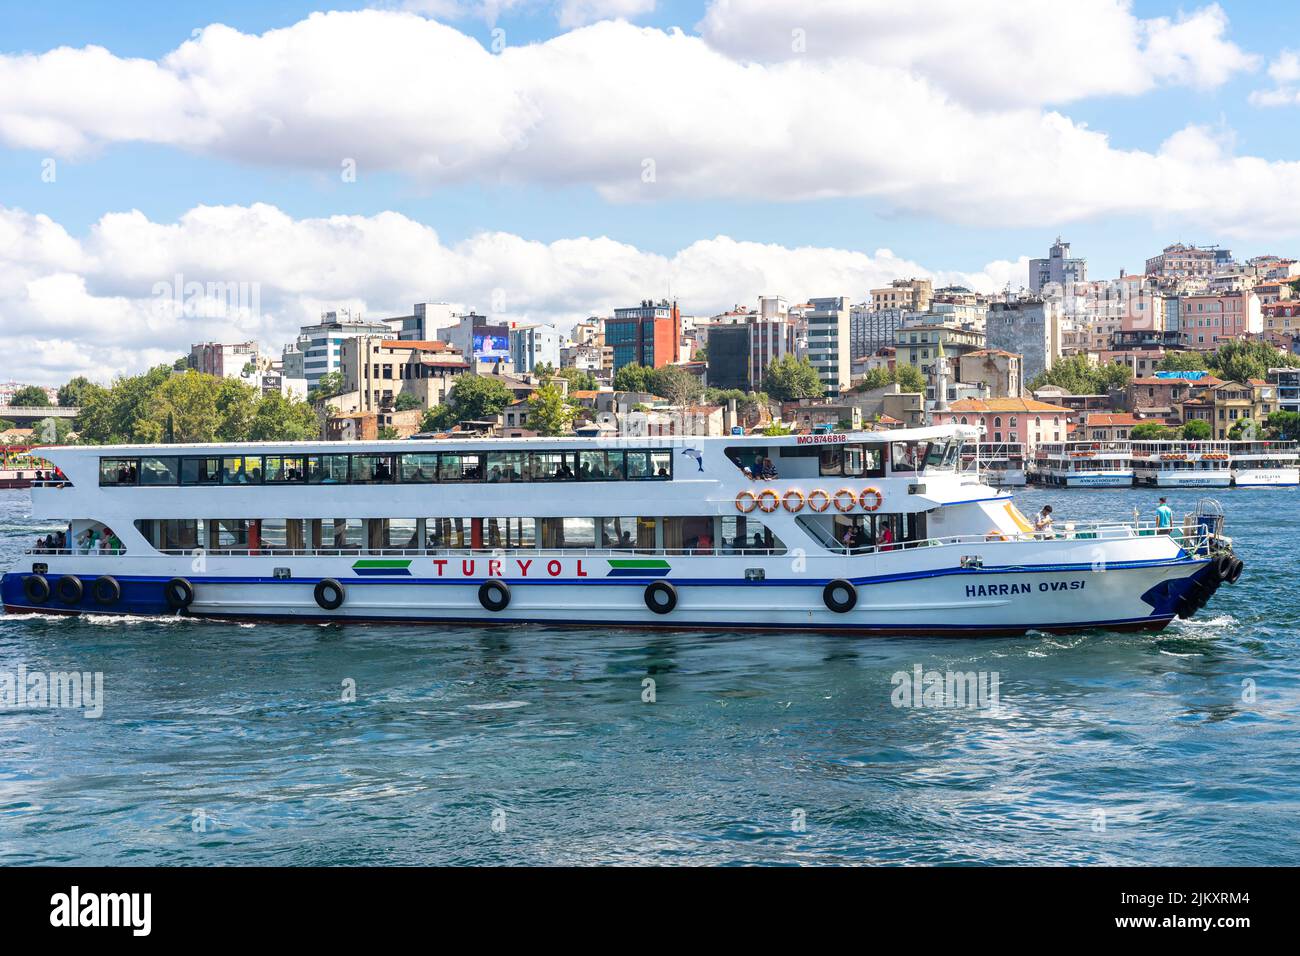 Turyol Fähre Boot nähert sich Eminonu Pier - Fähre, Bootstation im historischen Viertel von Fatih, Istanbul, Türkei Stockfoto